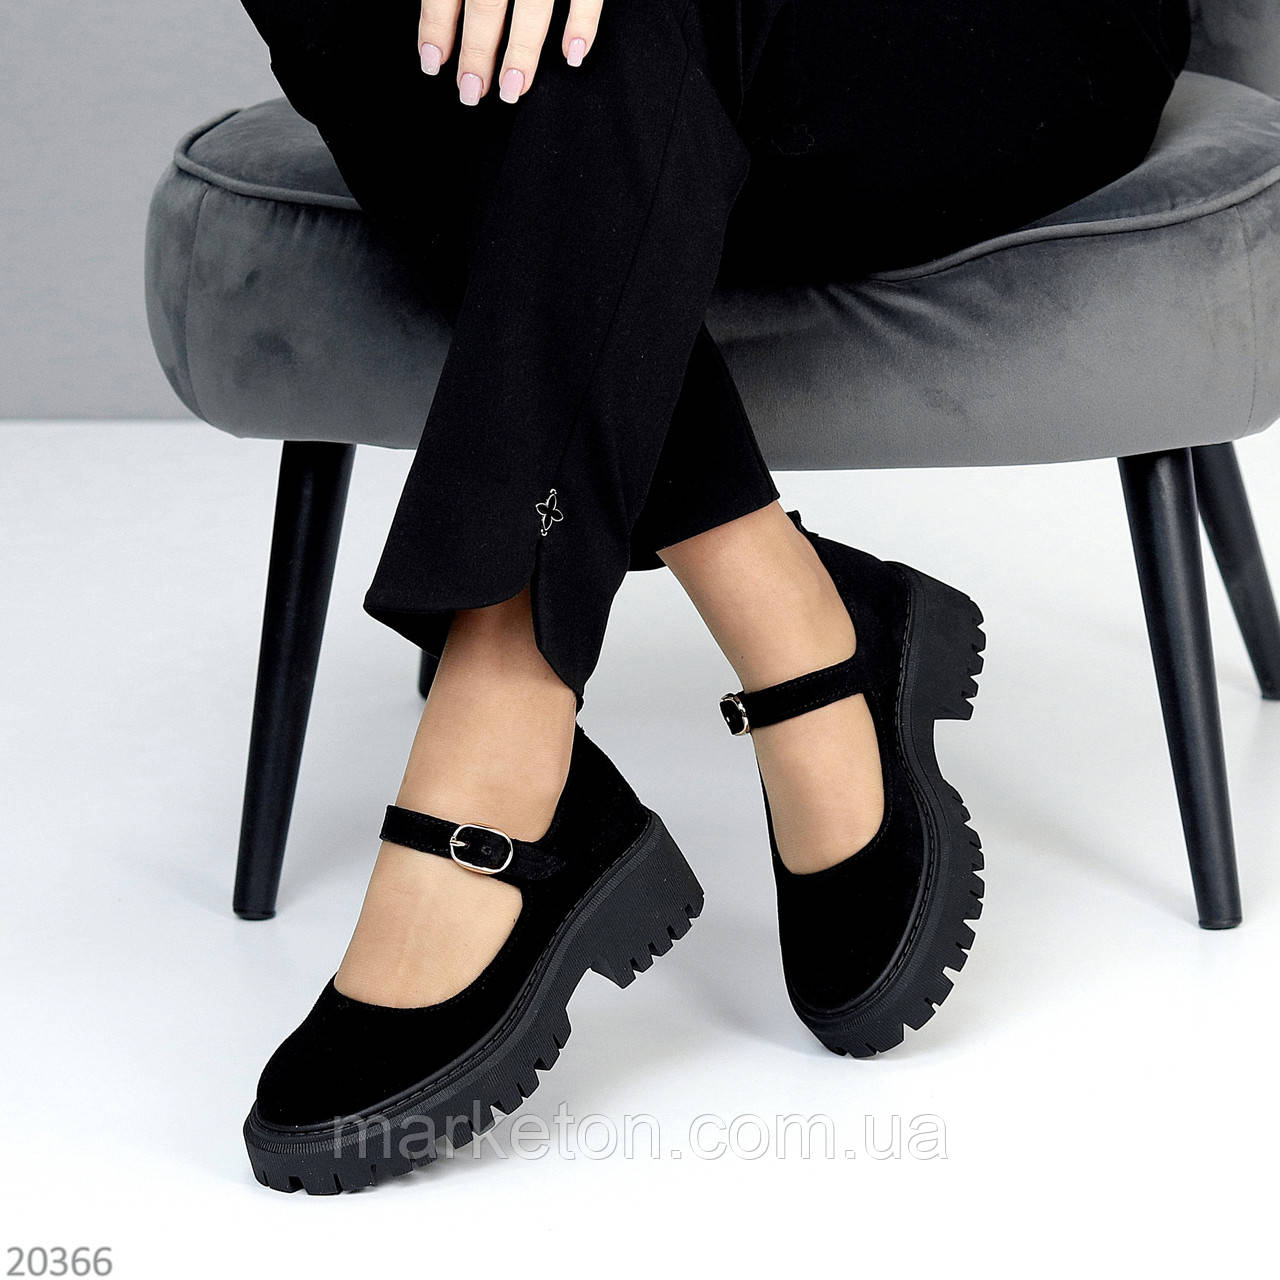 Шикарні замшеві чорні туфлі на шлейку натуральна замша виробництво Україна 40